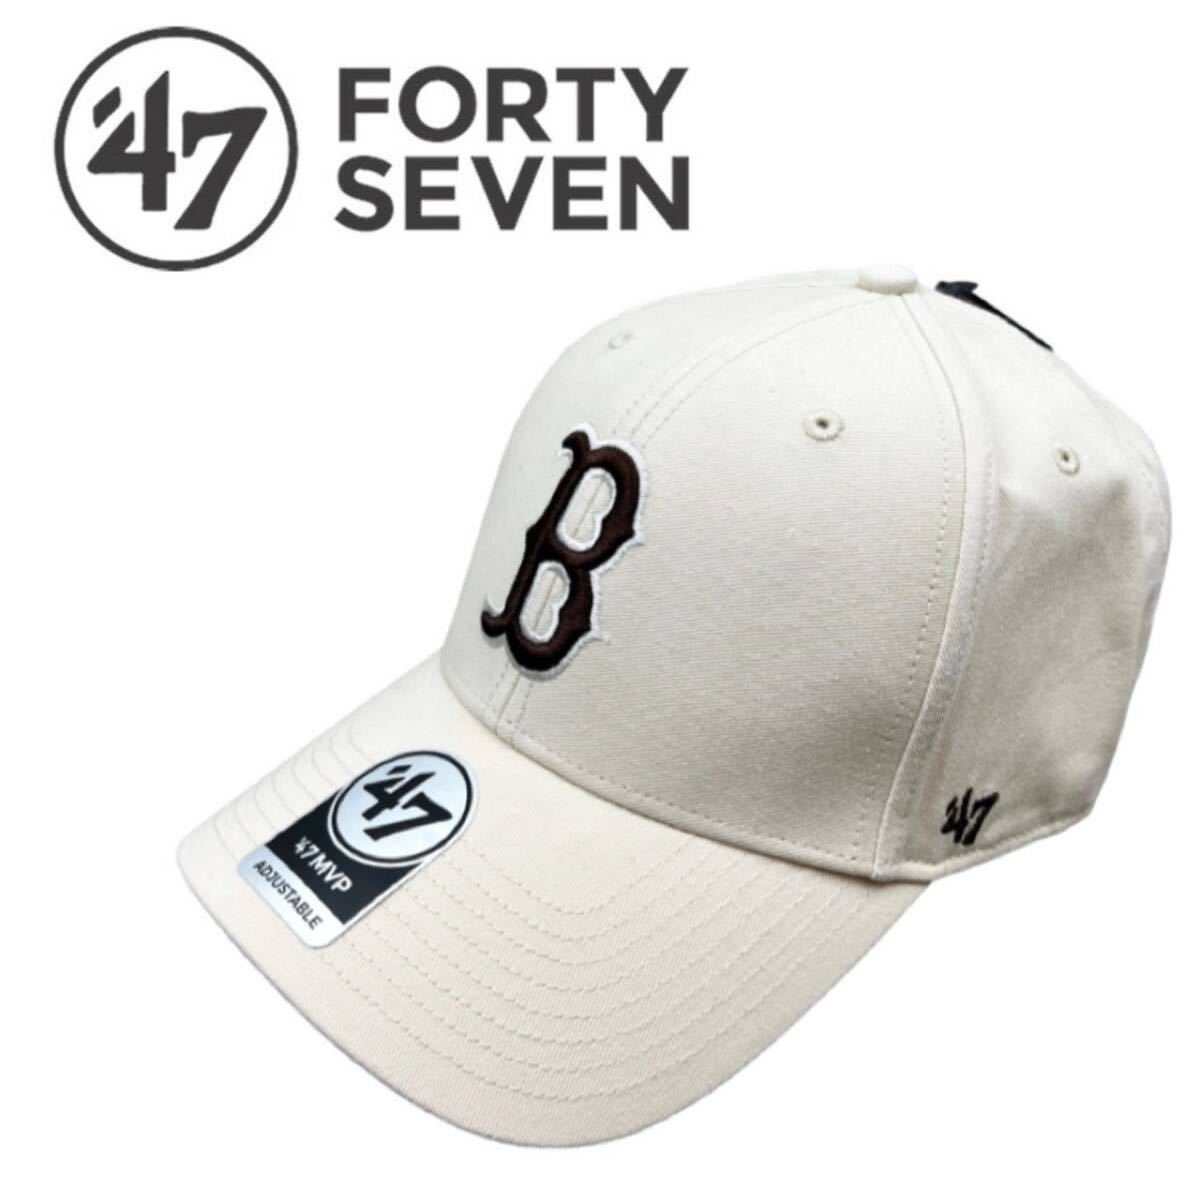 47 フォーティセブン ブランド キャップ 帽子 エムブイピー MVP02WBV レッドソックス ナチュラル×ブラウン 野球帽 47BRAND MVP 新品